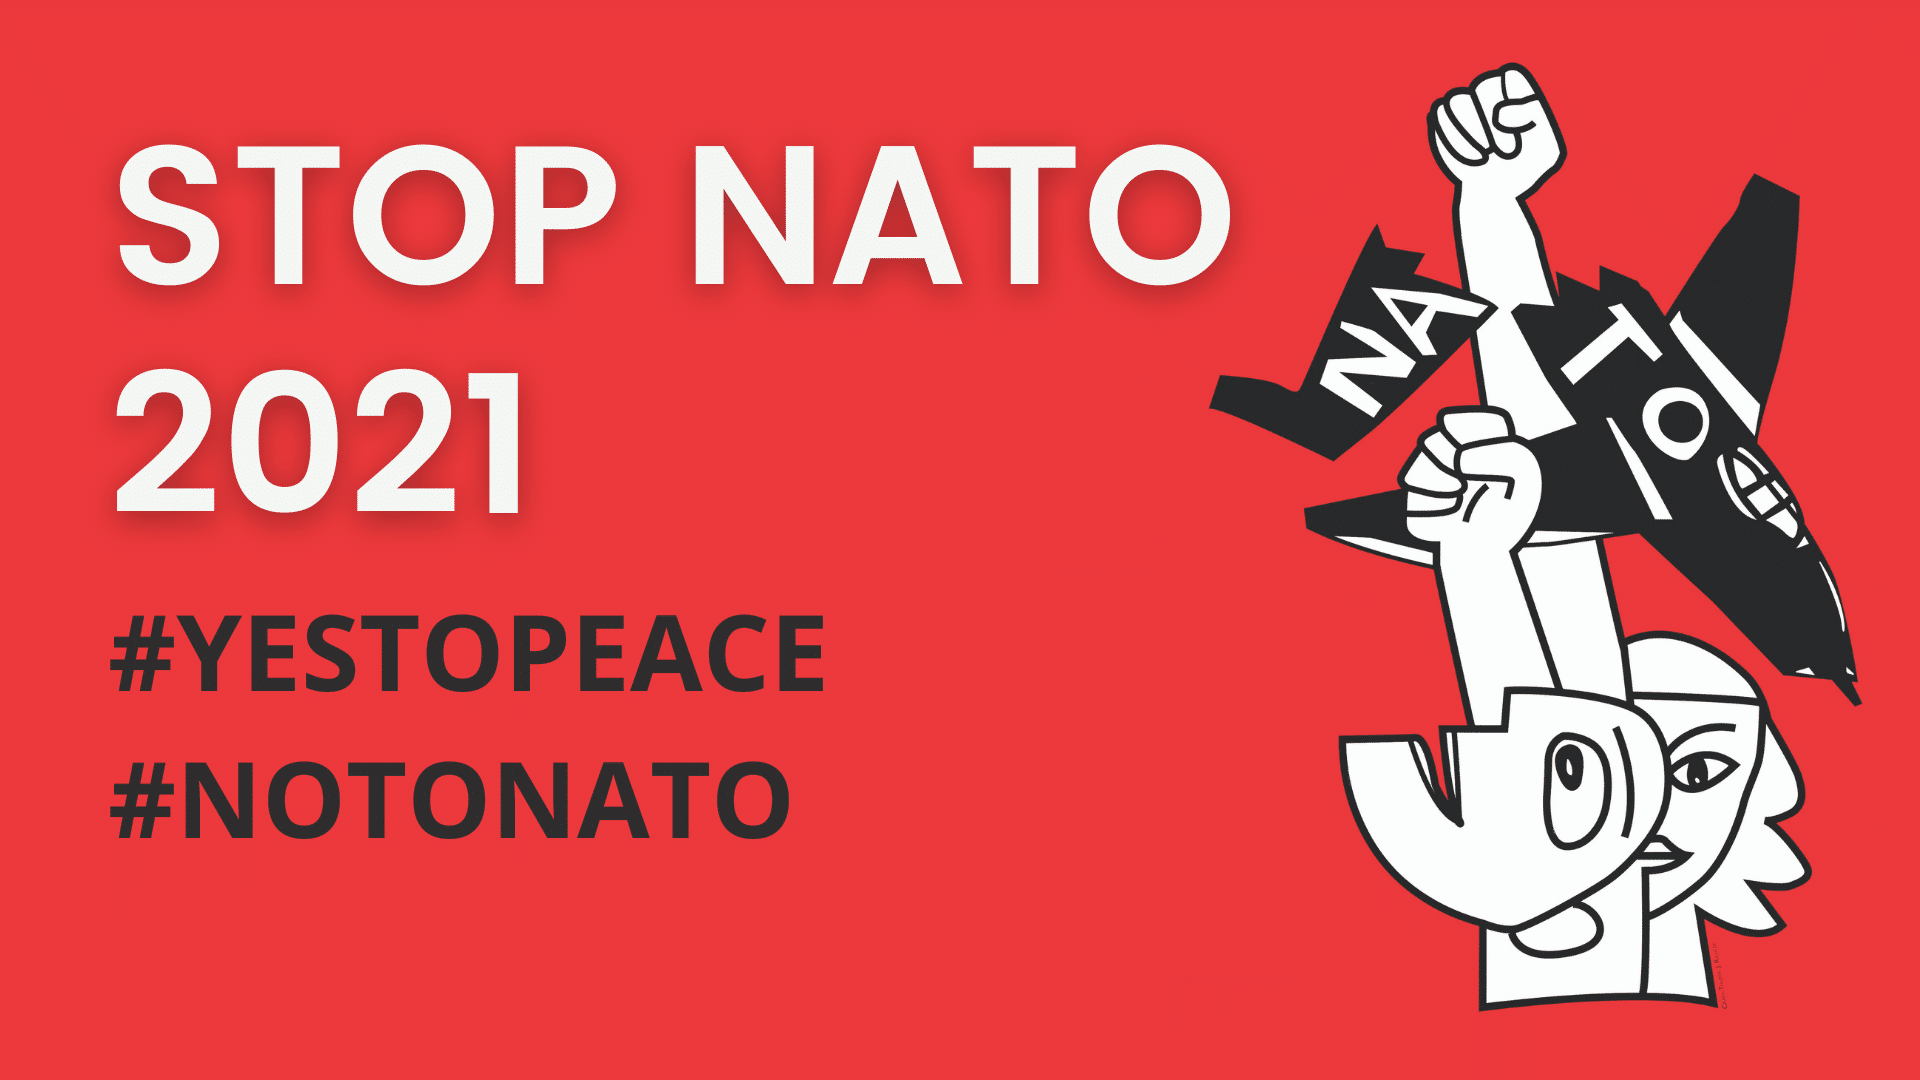 Oproep protestactie tegen volgende NAVO top van 14 juni